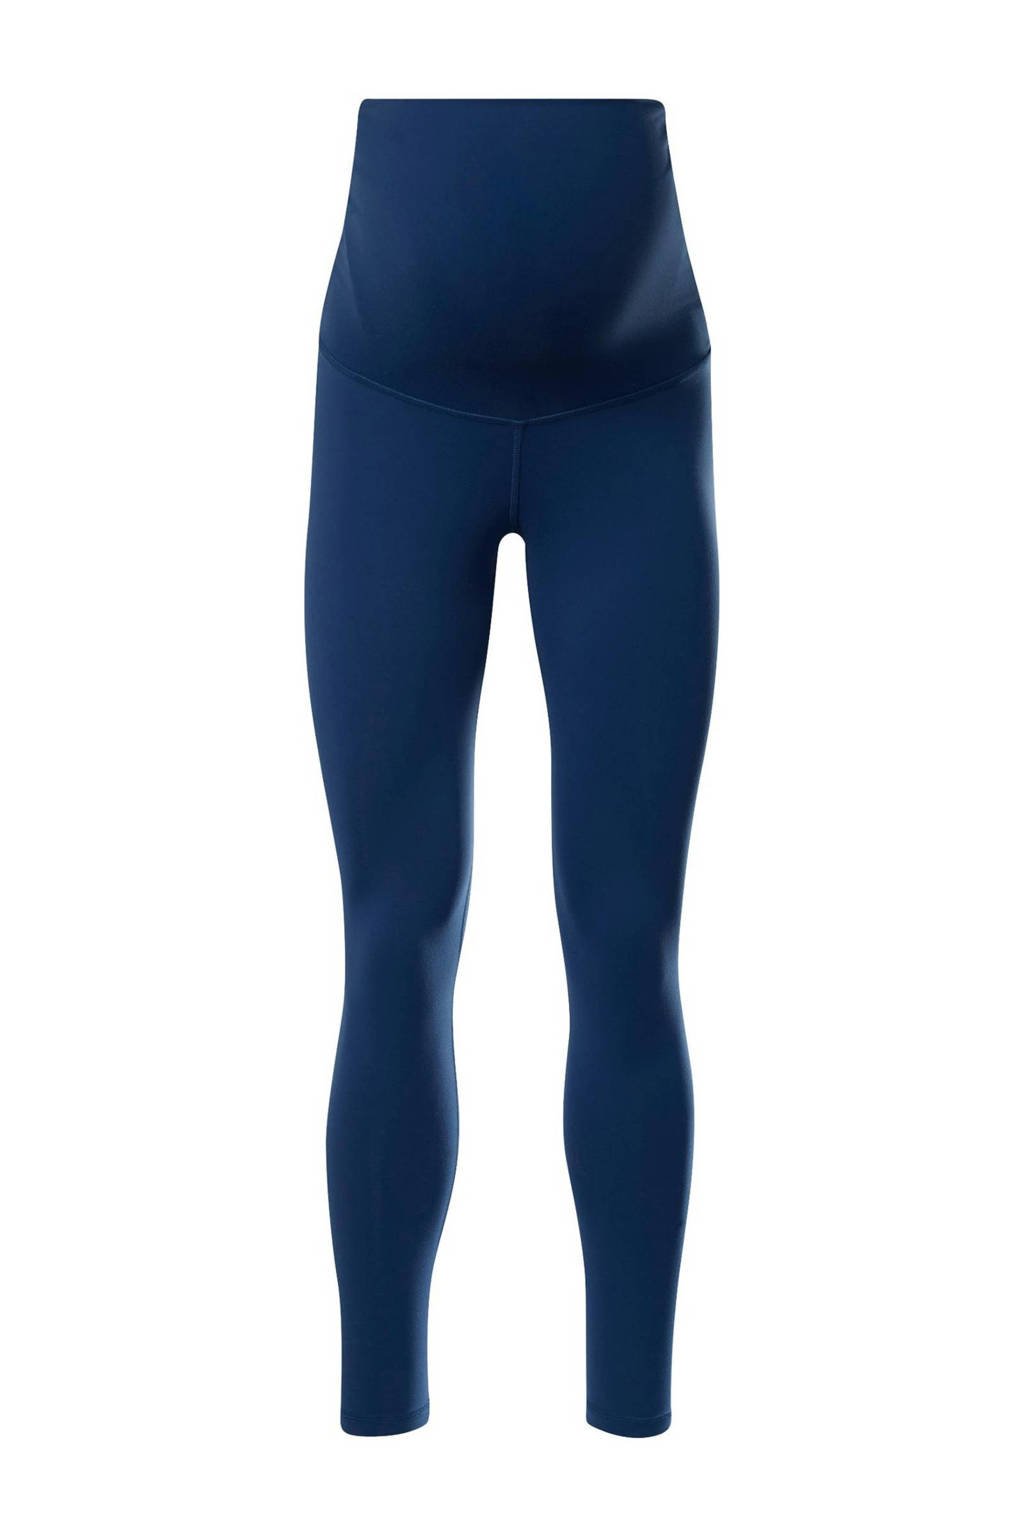 Blauwe dames Reebok Training zwangerschaps sportlegging van polyester met slim fit, regular waist en elastische tailleband